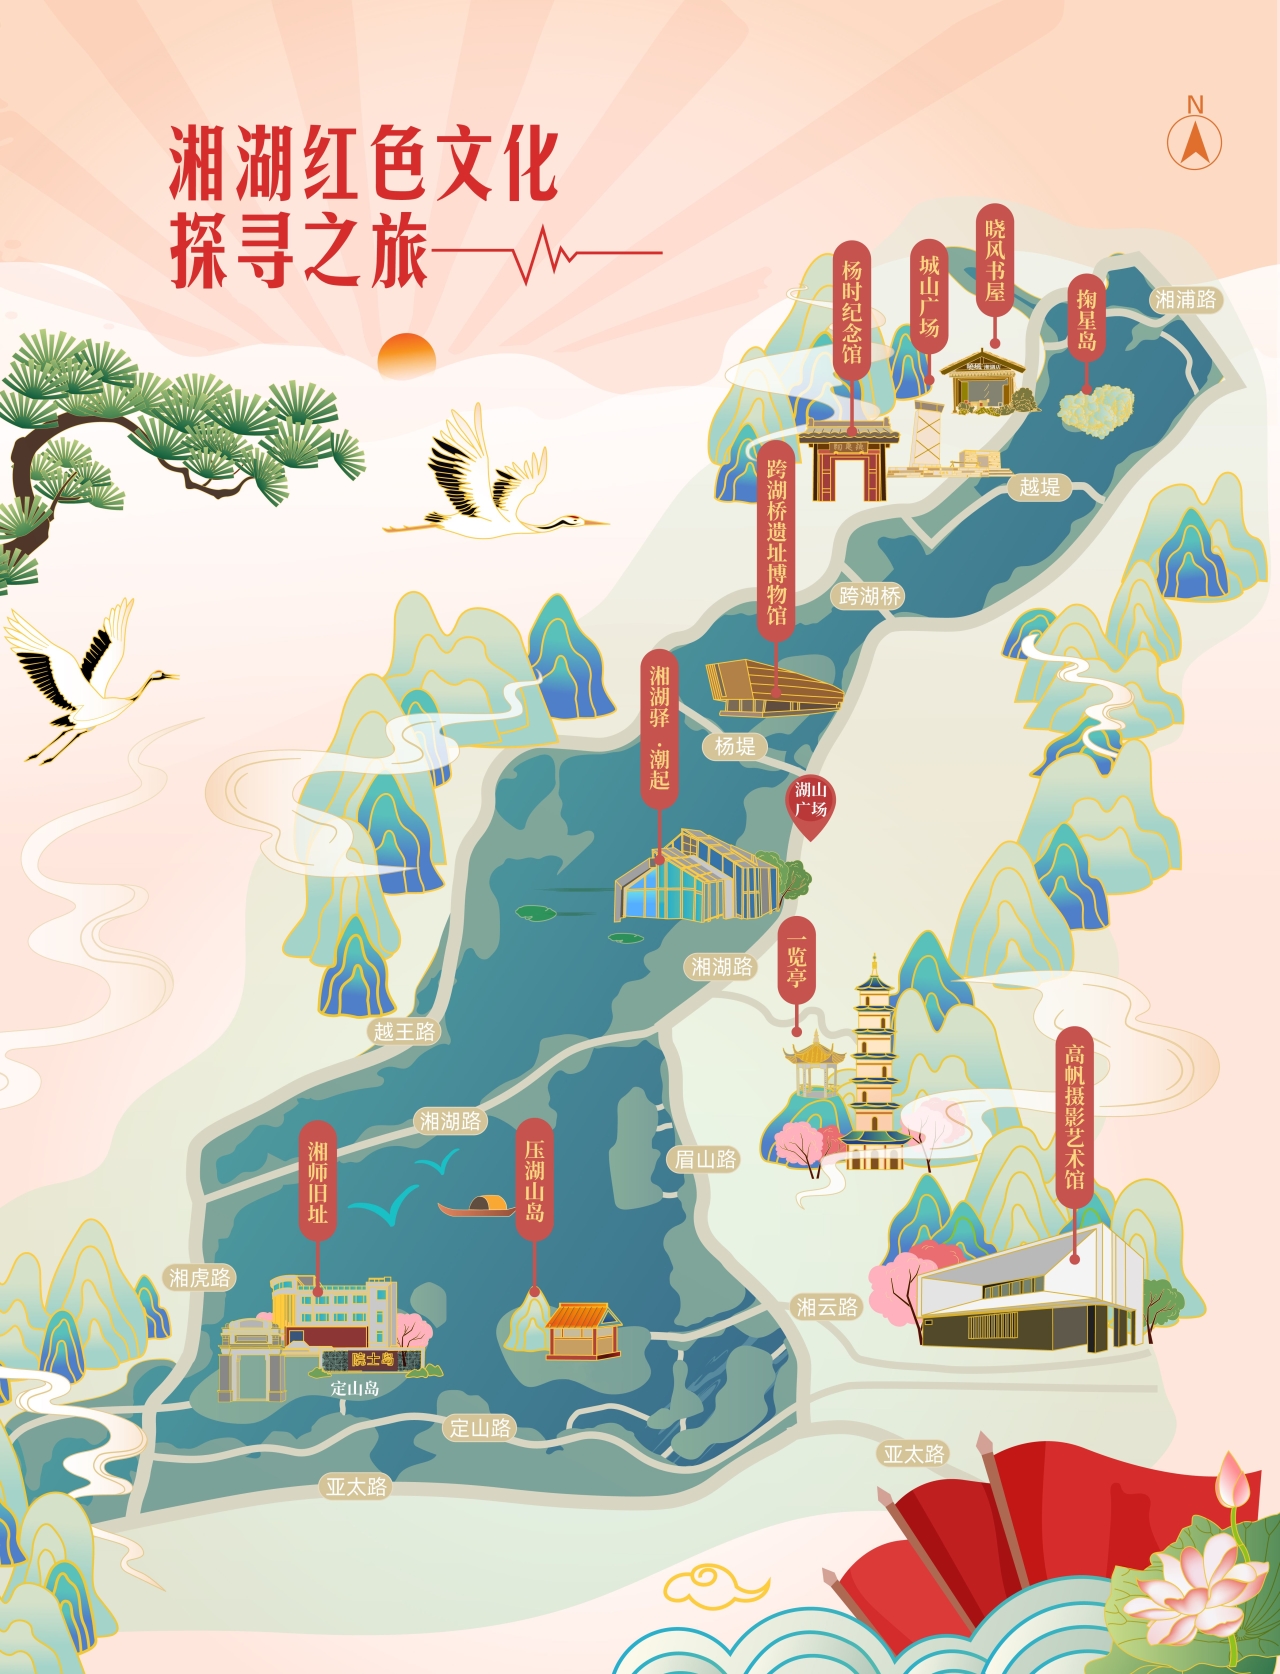 杭州湘湖发布红色旅游线路 "一南一北"串联百年